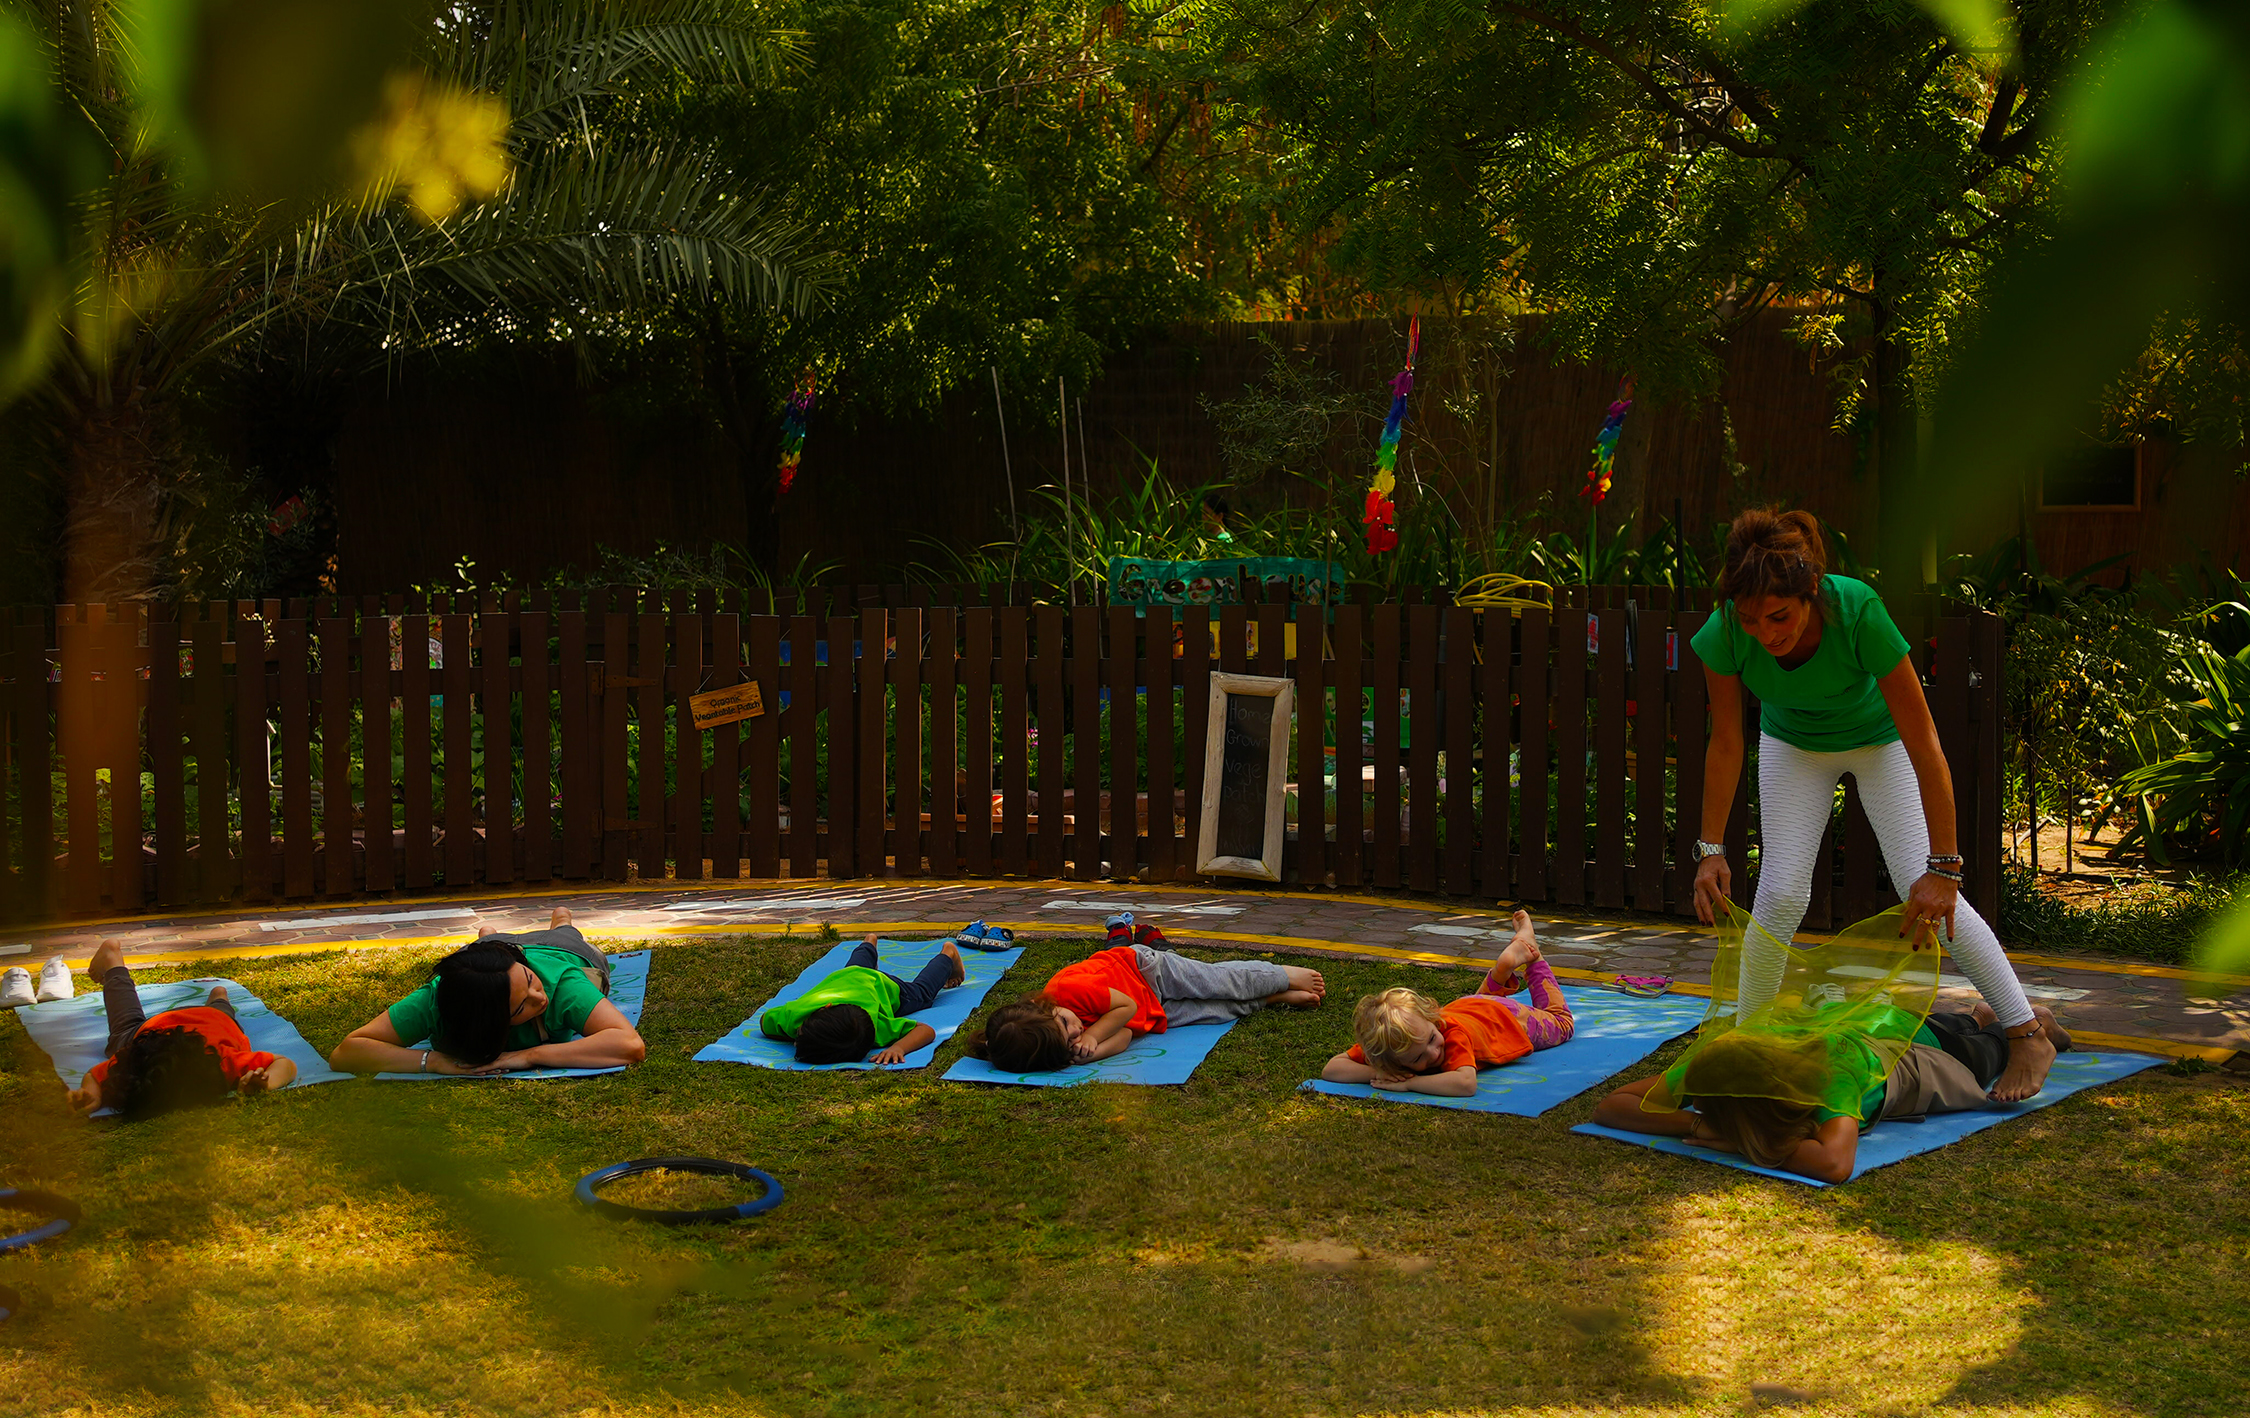 Revisión escolar de la guardería infantil Home Grown en Dubai, aquí centrada en la provisión de clases de yoga para niños en hermosos jardines